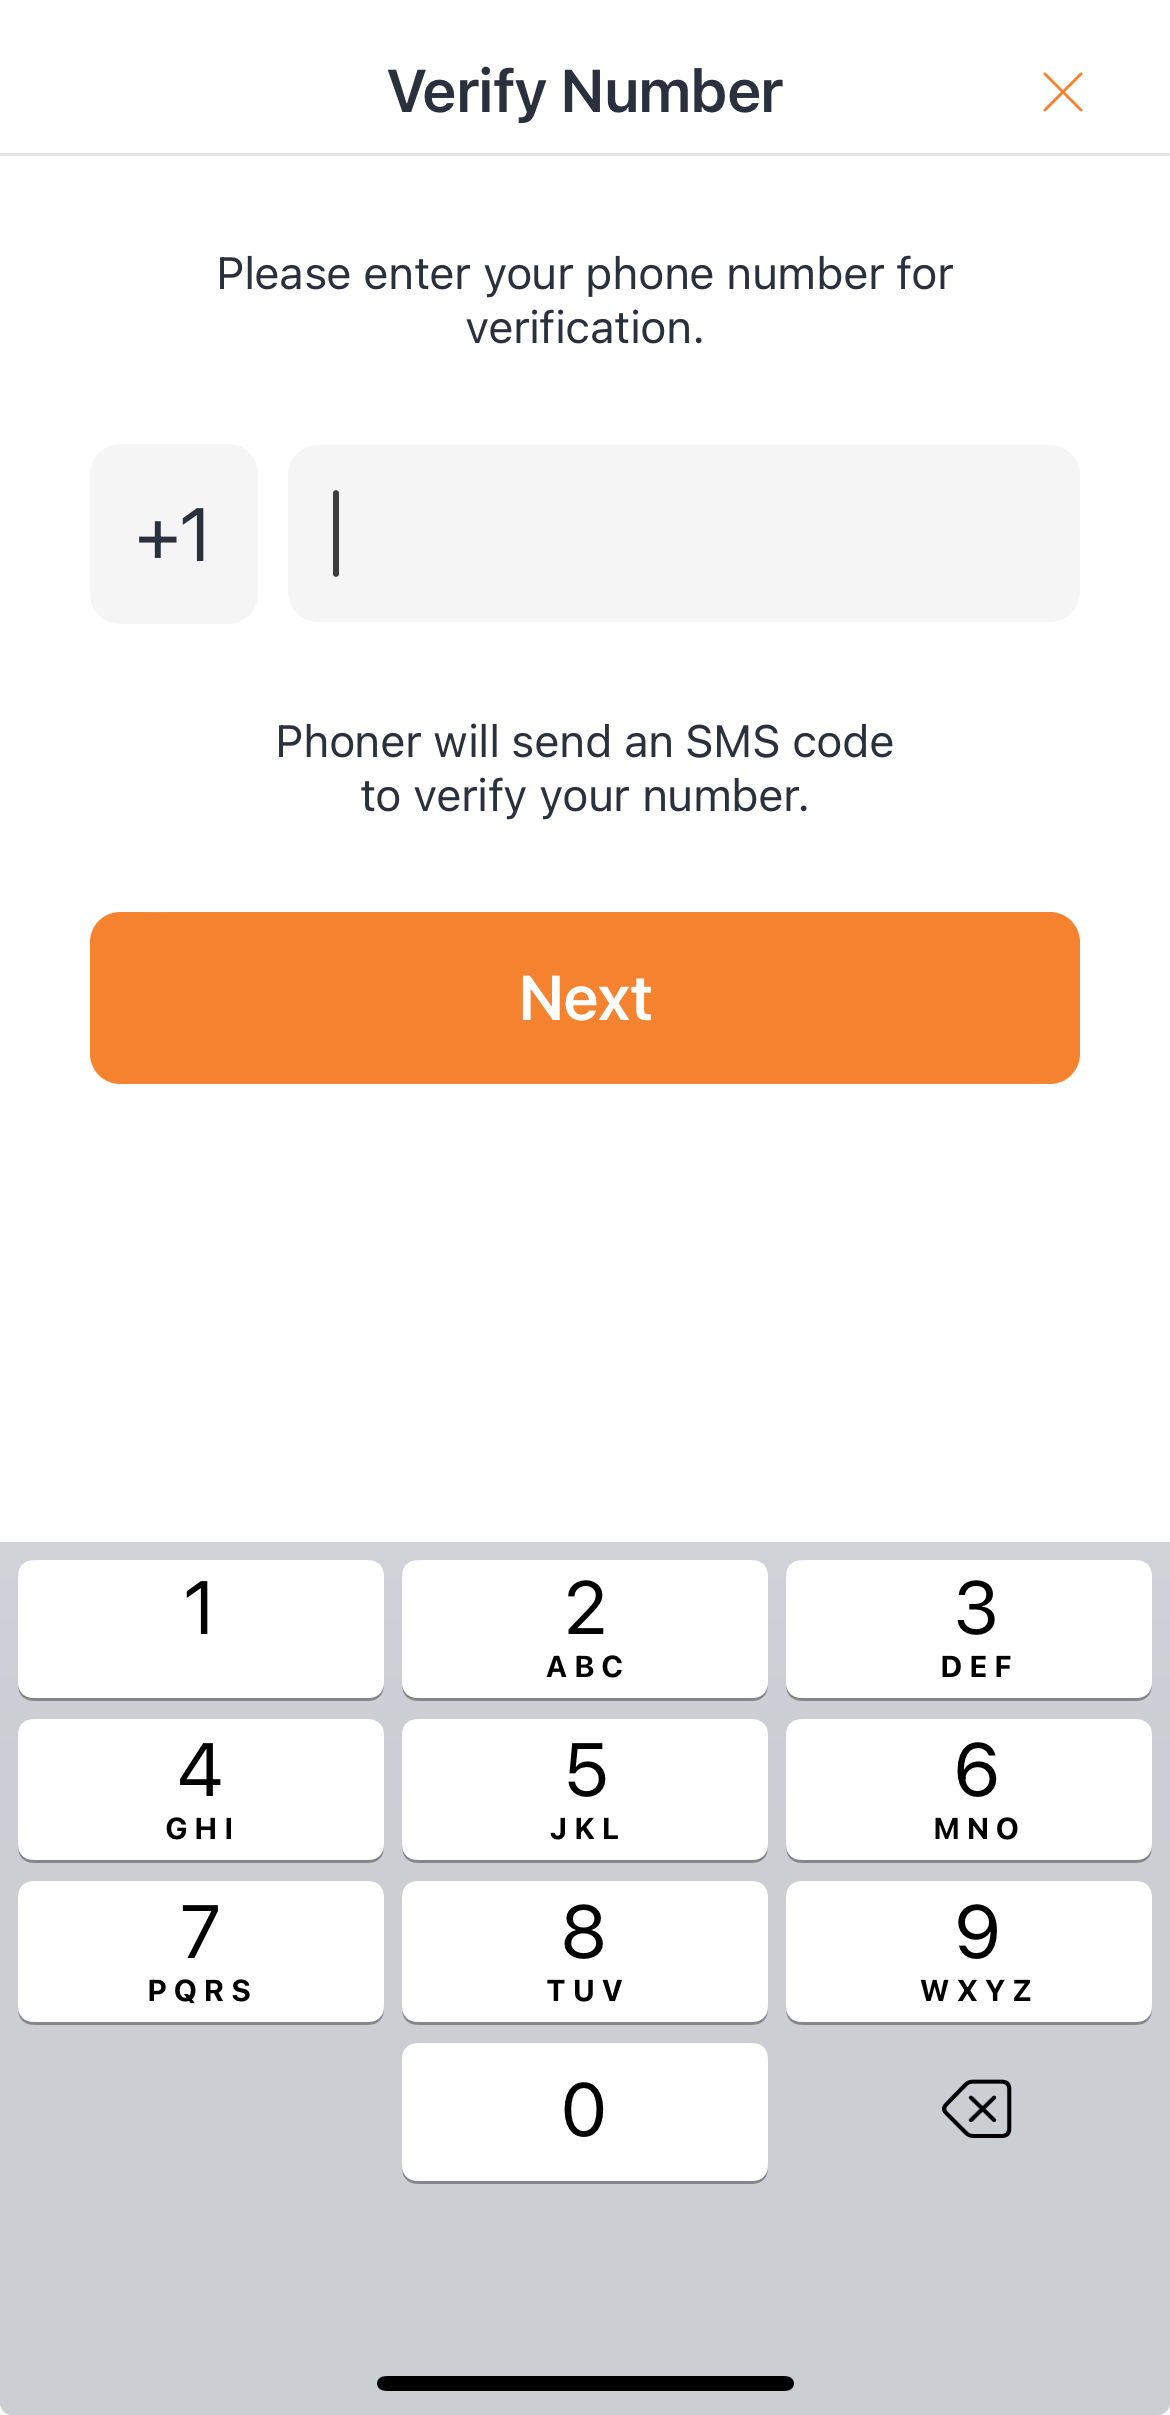 Phoner_Verify Mobile Number_2.jpeg